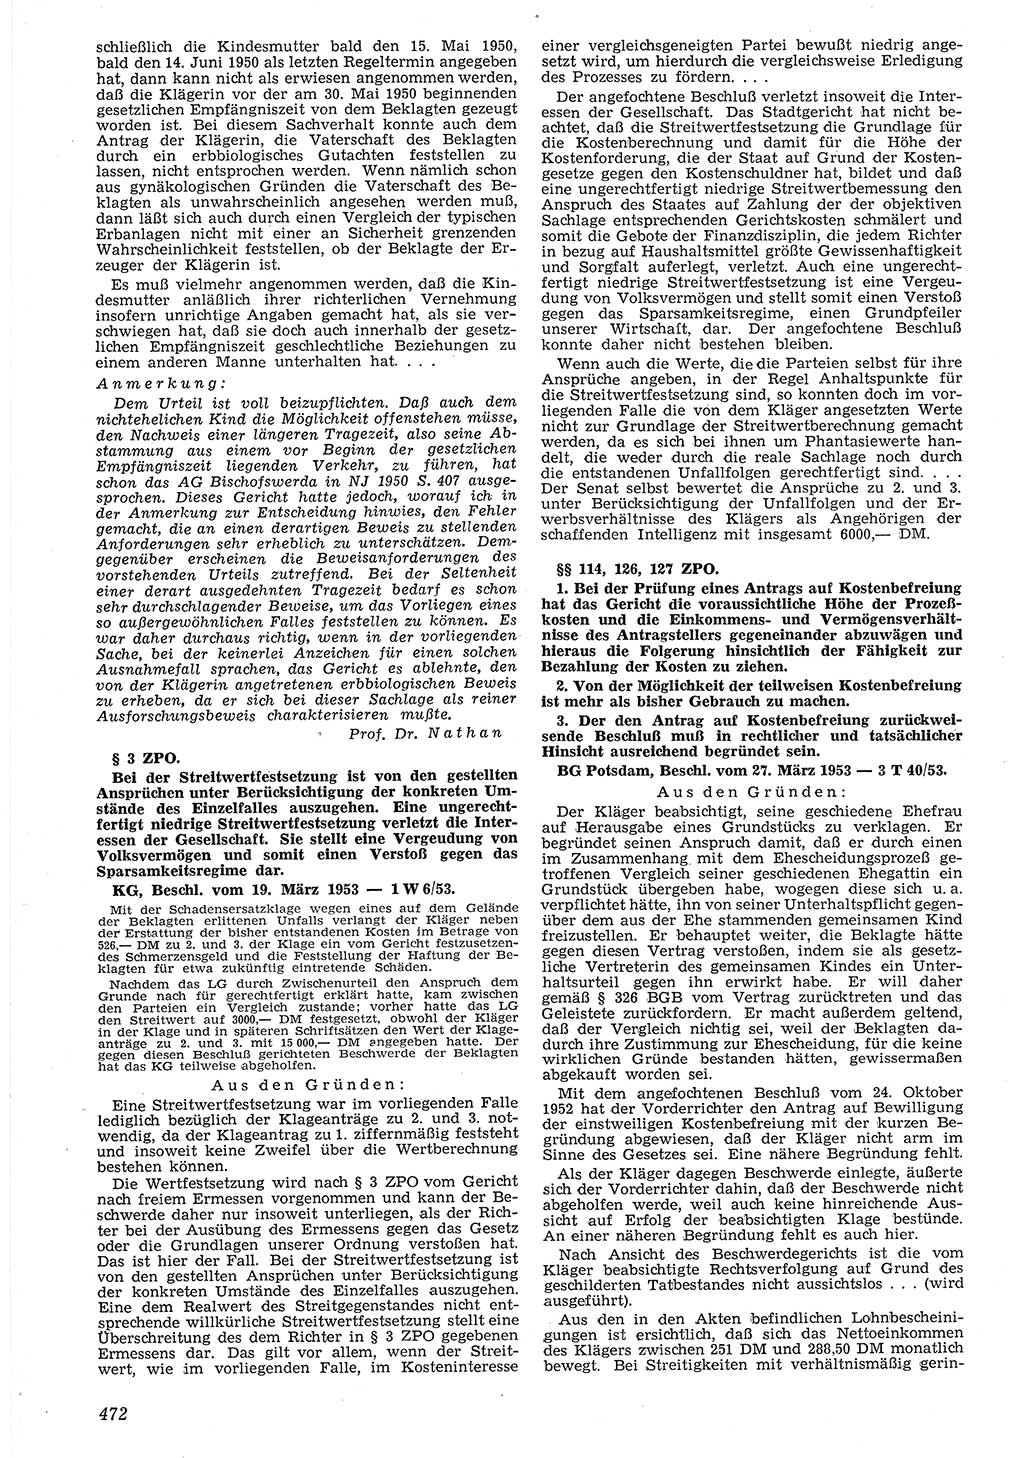 Neue Justiz (NJ), Zeitschrift für Recht und Rechtswissenschaft [Deutsche Demokratische Republik (DDR)], 7. Jahrgang 1953, Seite 472 (NJ DDR 1953, S. 472)